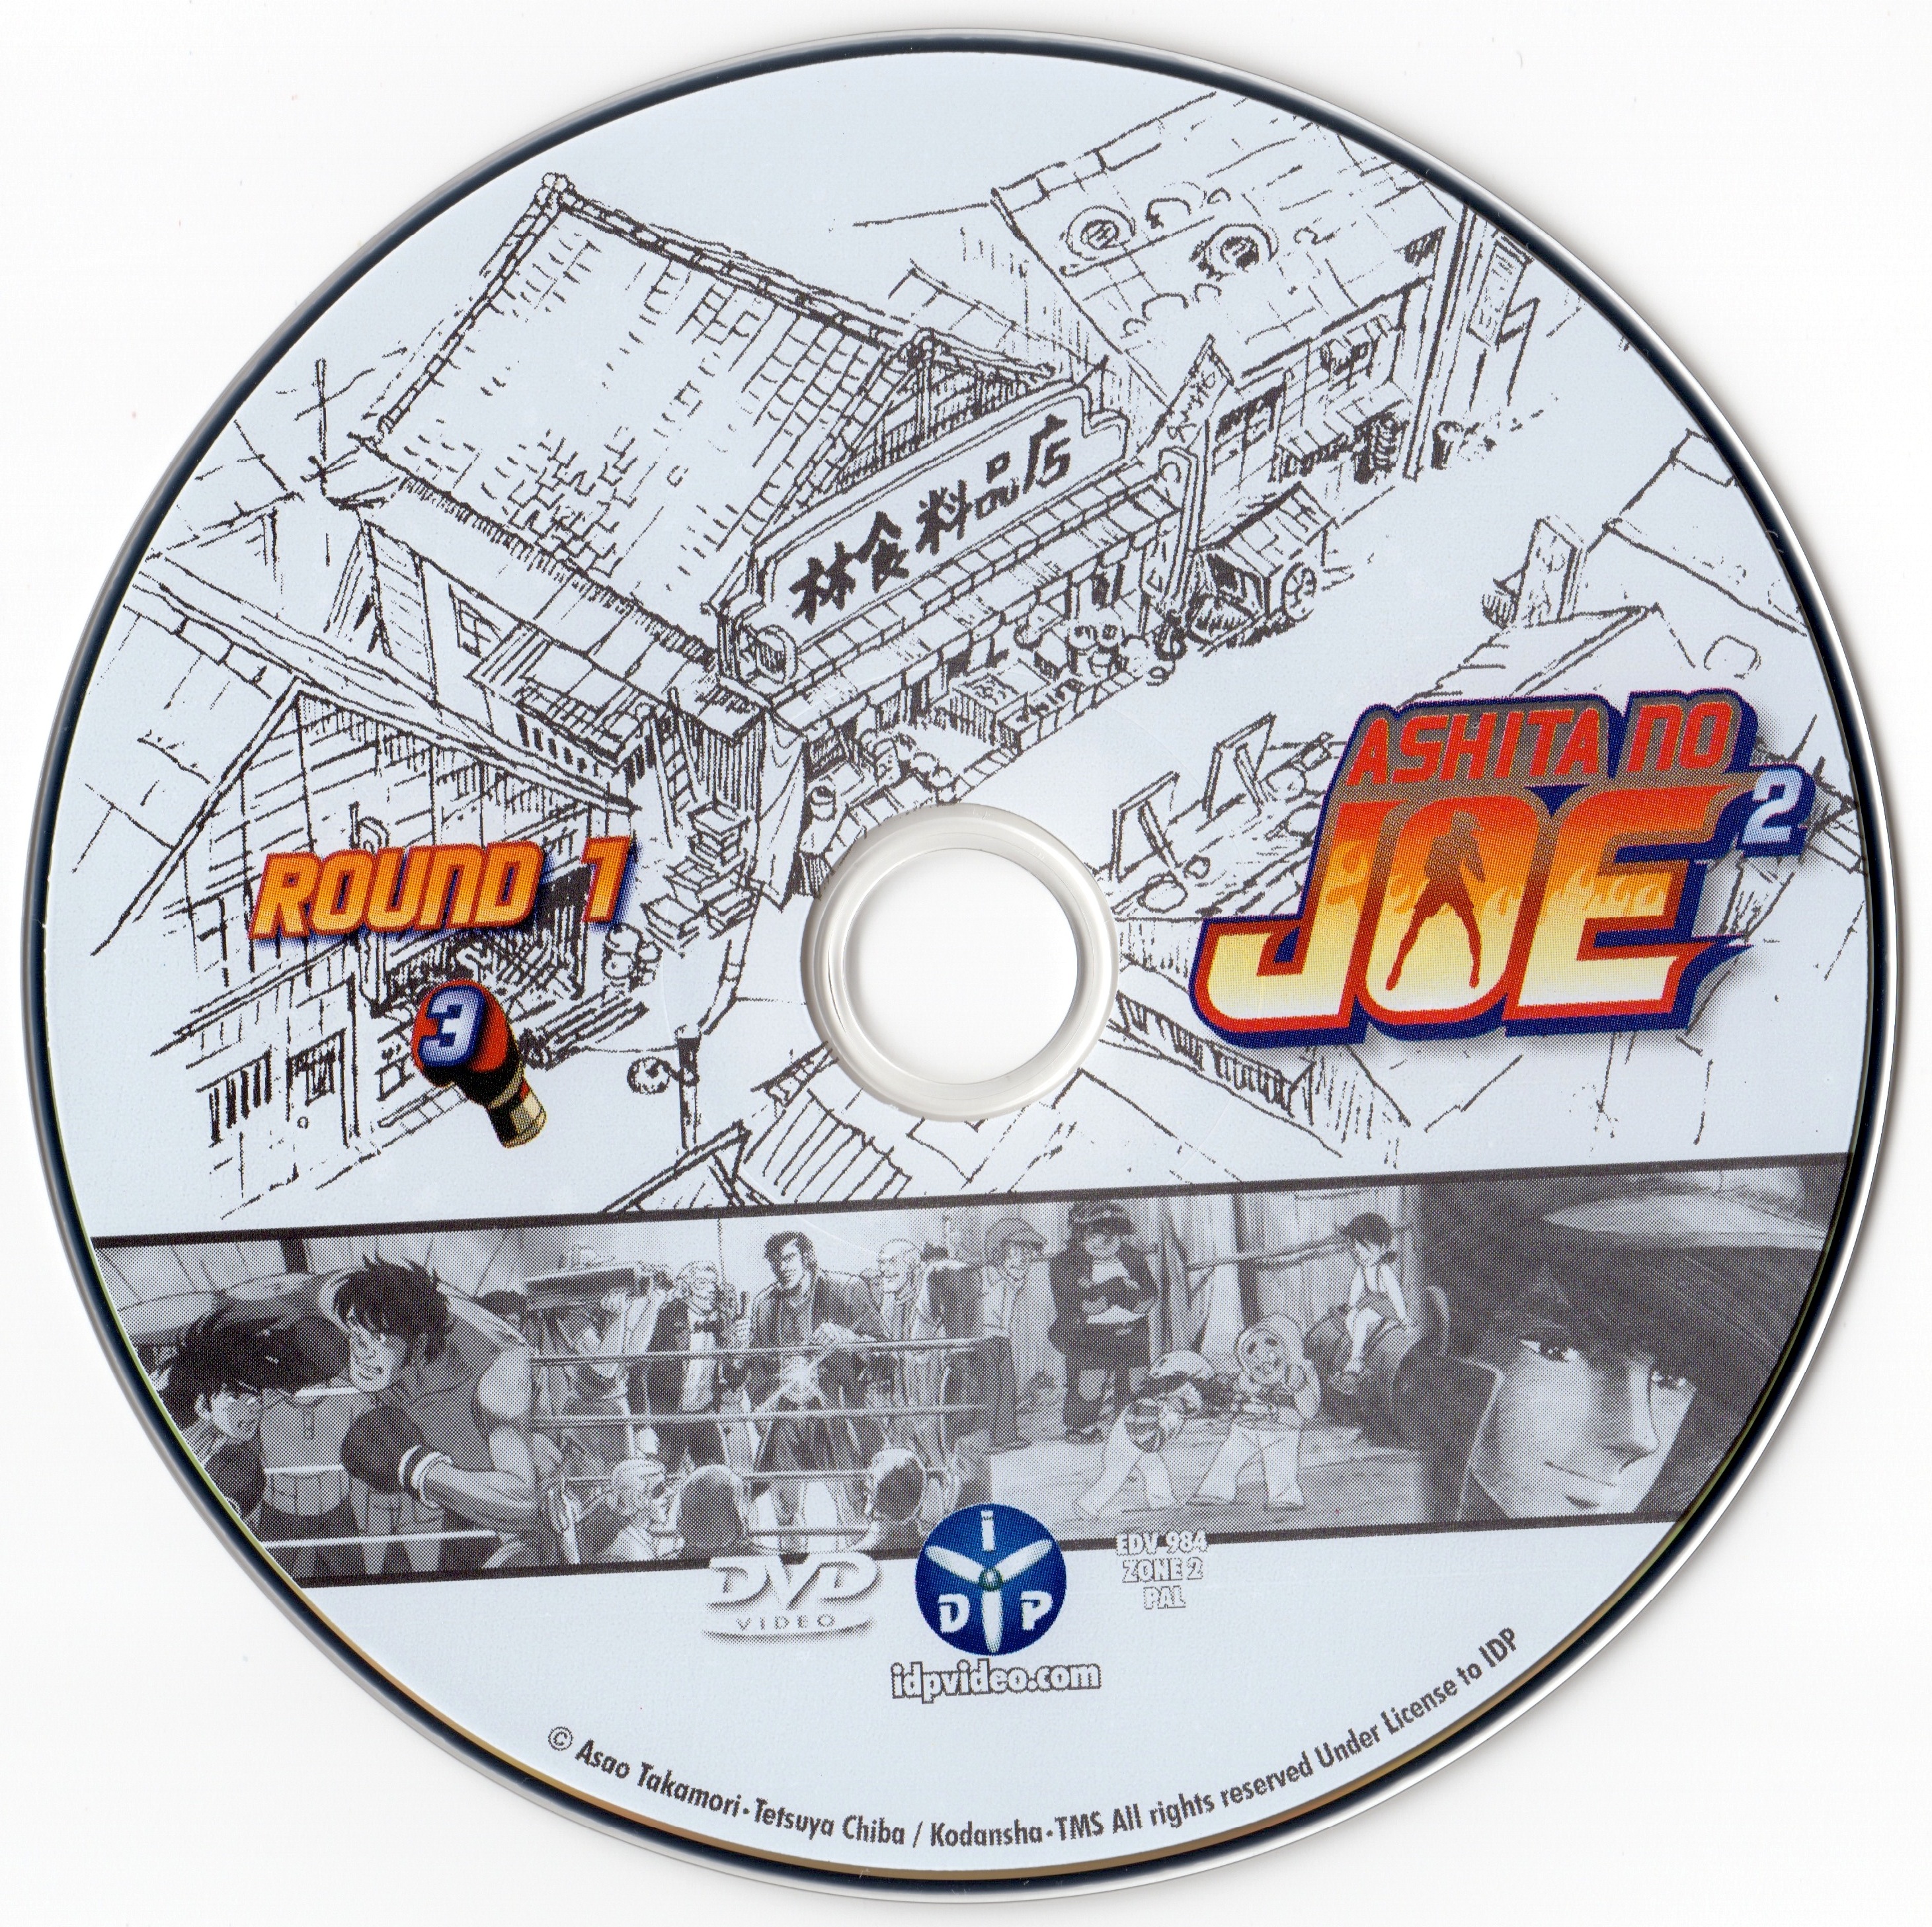 Ashita No Joe 2 Round 1 DVD 3